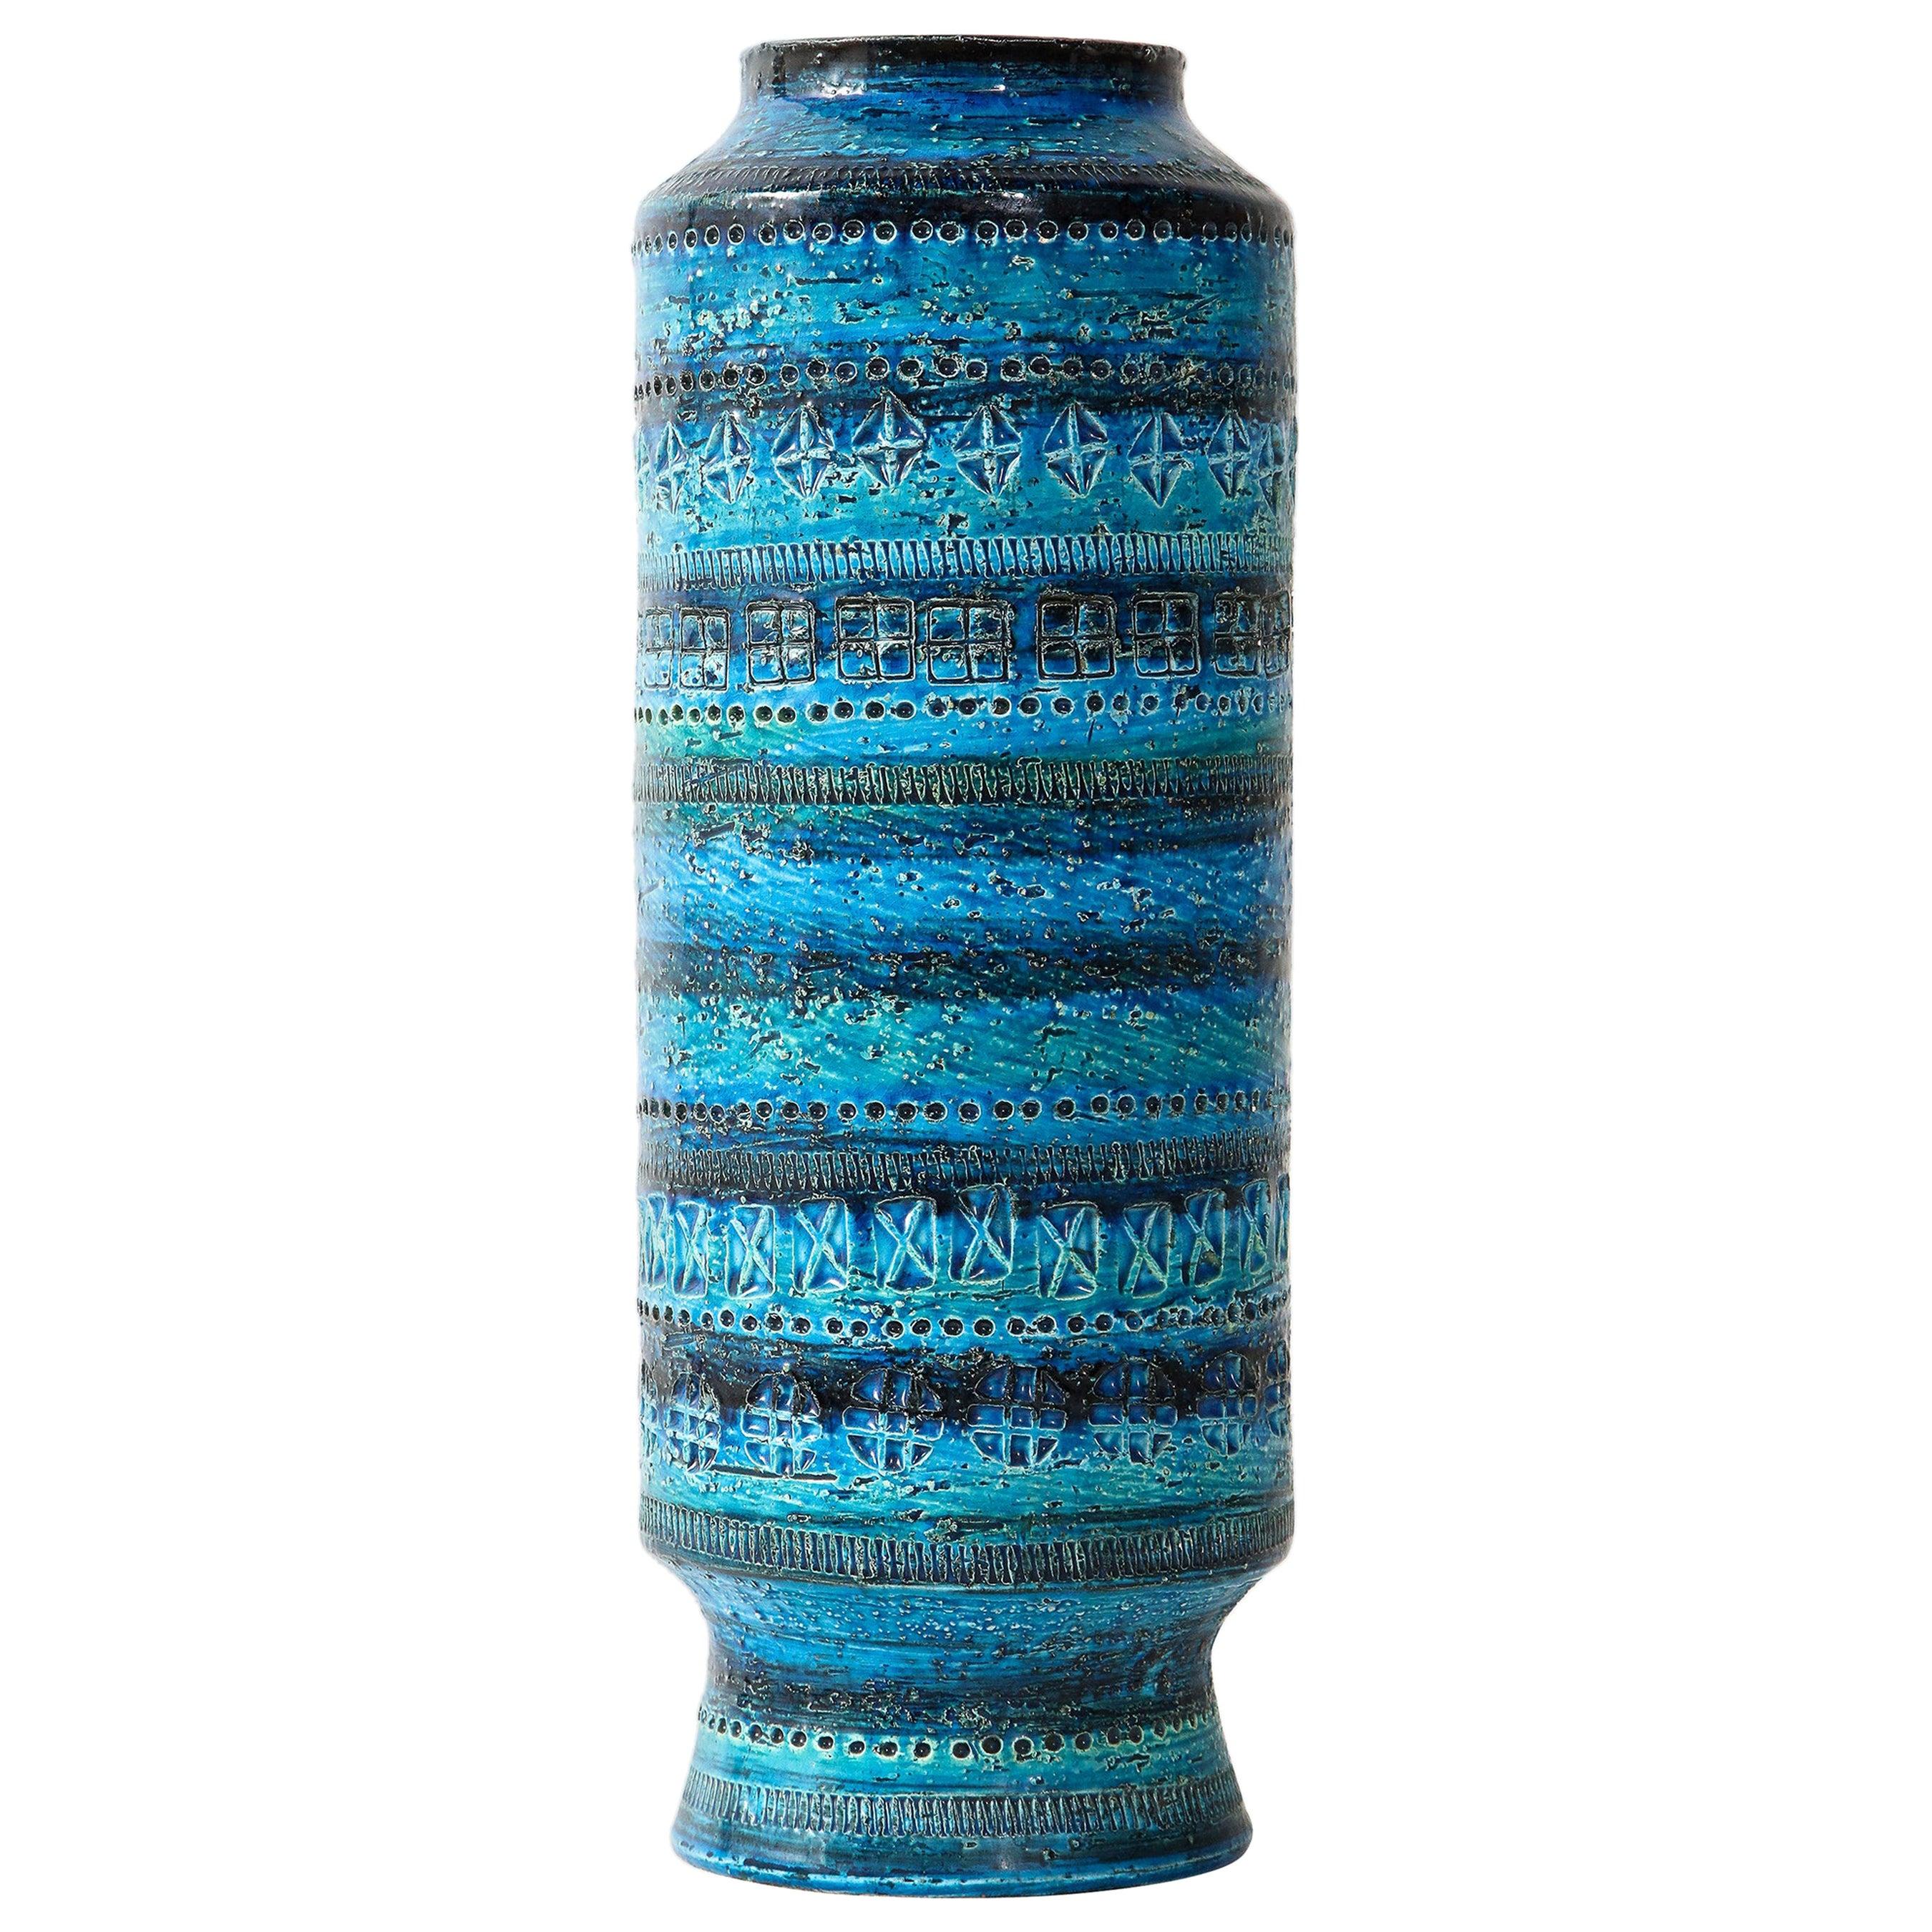 Bitossi, Ceramic Vase, Midcentury, Italy, Turquoise, circa 1950